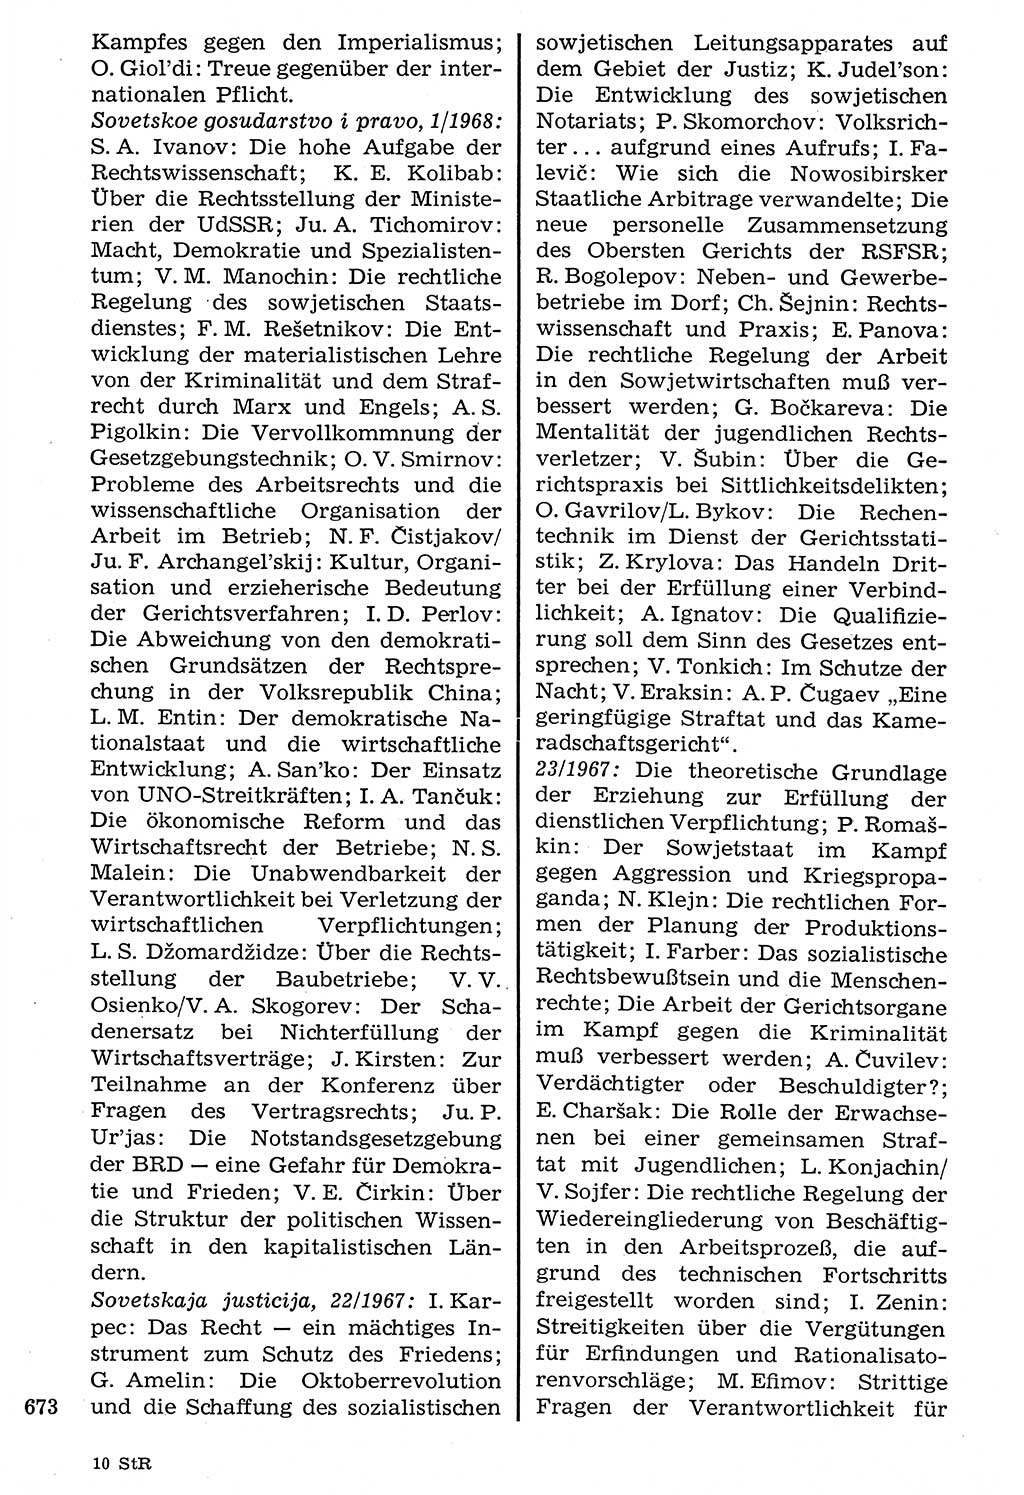 Staat und Recht (StuR), 17. Jahrgang [Deutsche Demokratische Republik (DDR)] 1968, Seite 673 (StuR DDR 1968, S. 673)